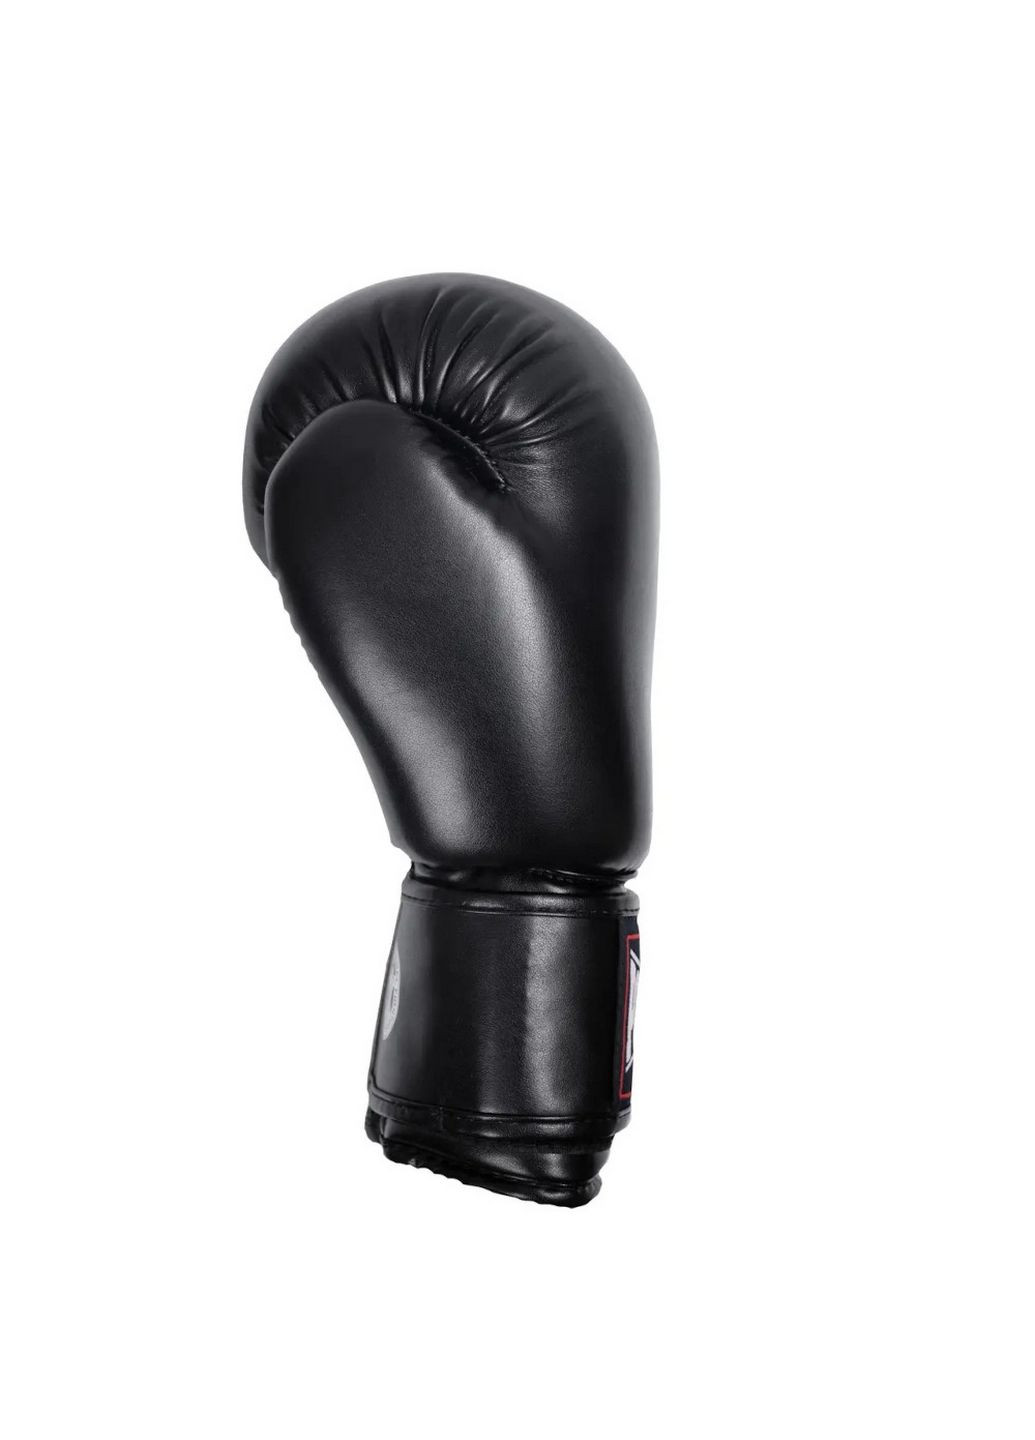 Перчатки боксерские PP 3004 PowerPlay (293481785)